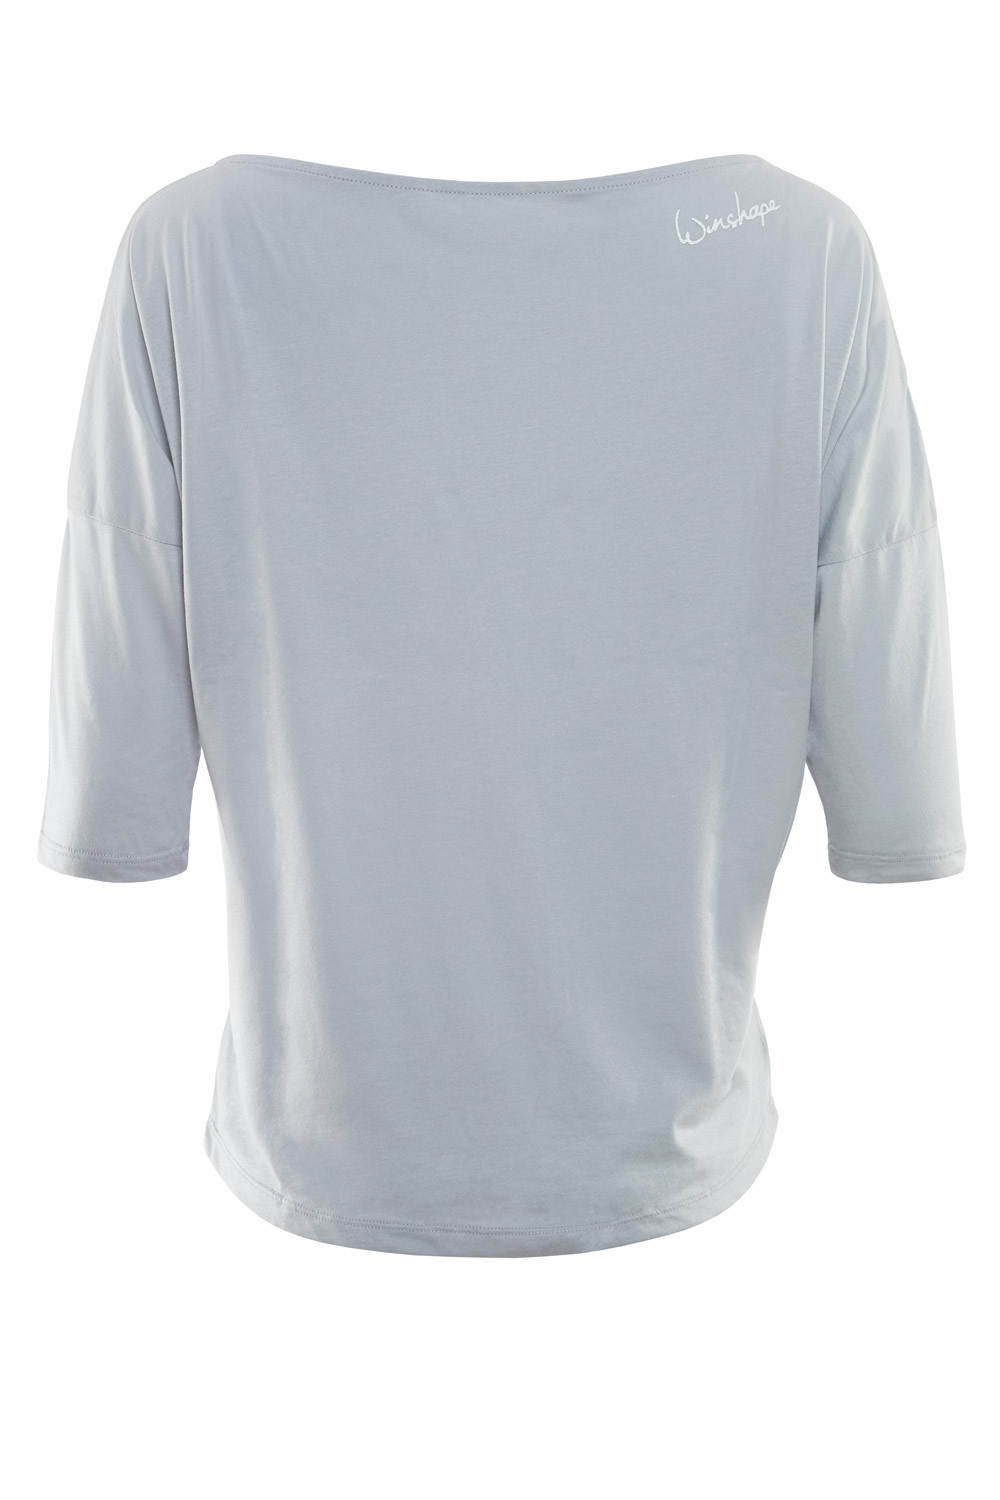 Ultra leichtes Modal-3/4-Arm Shirt need coffee”, Winshape MCS001 Style mit weißem Glitzer-Aufdruck Dance I „First